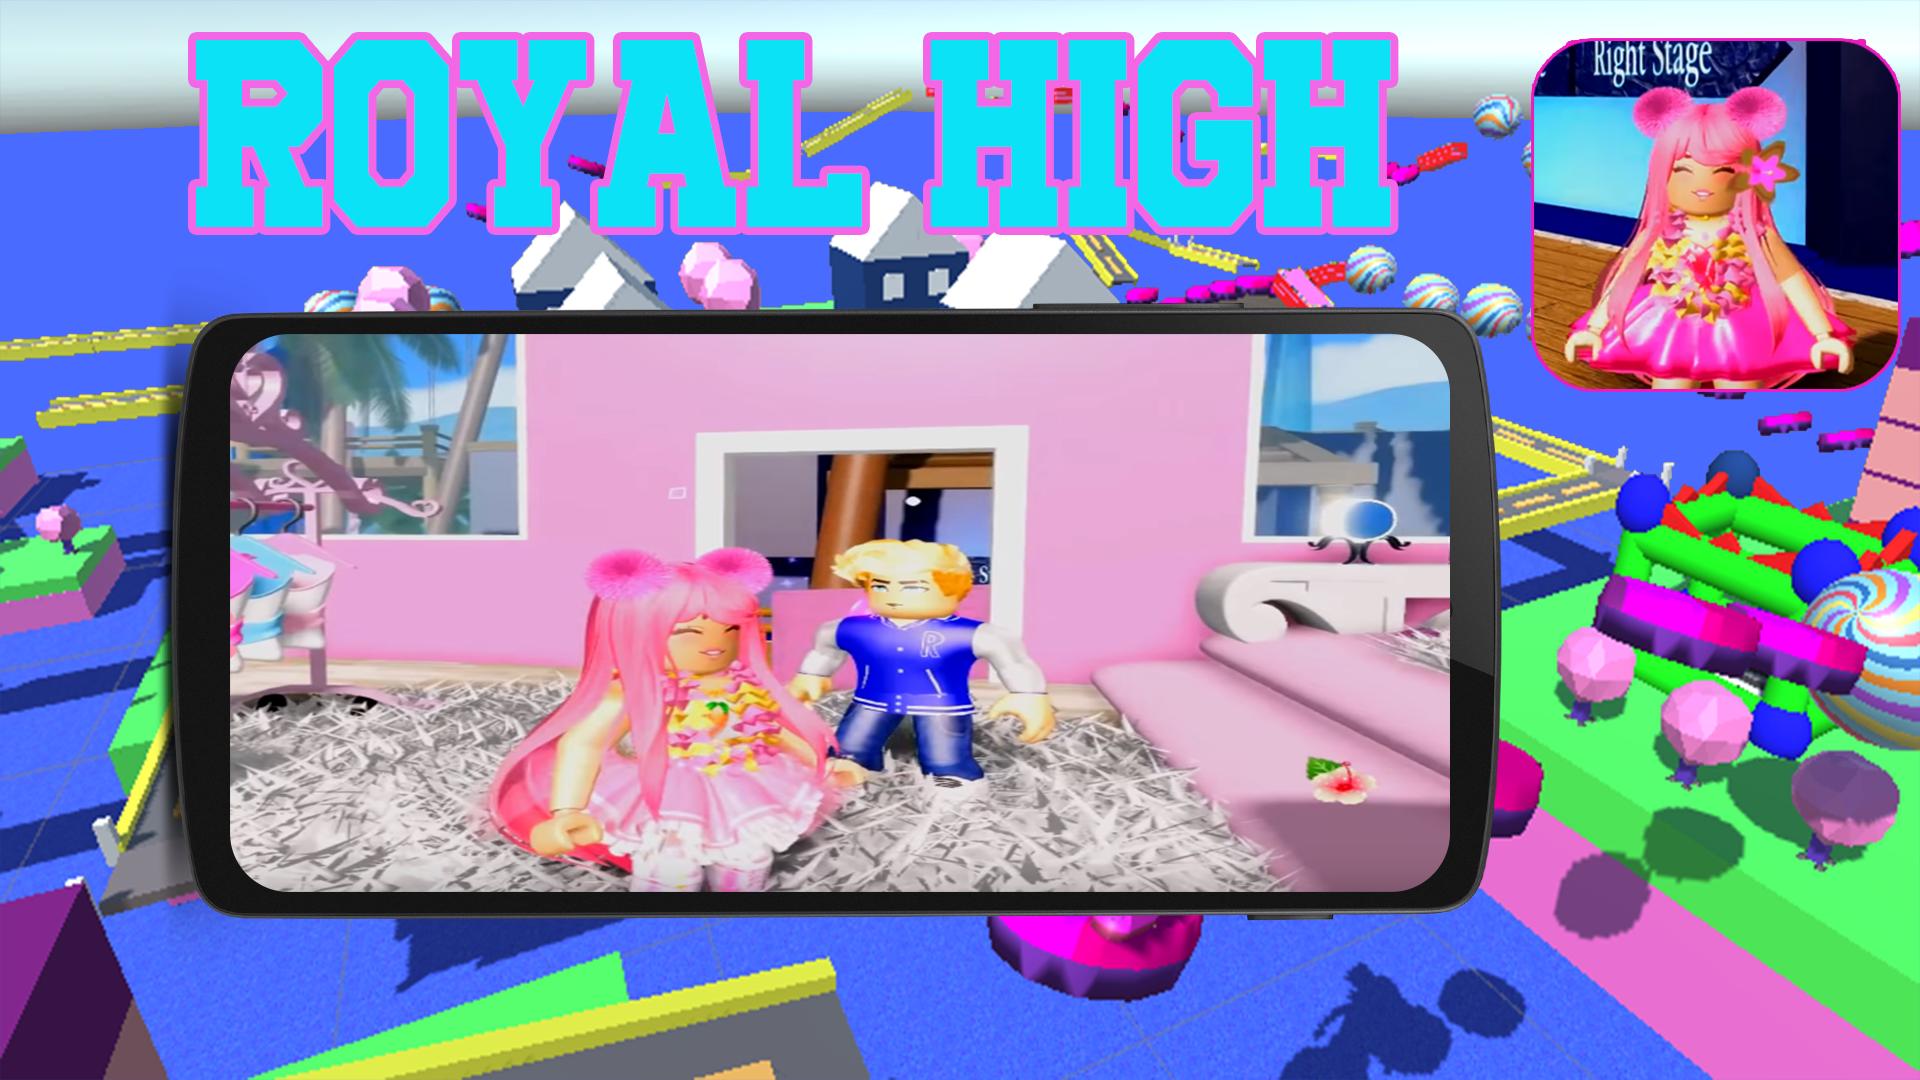 Youtube Roblox Royal High Peach